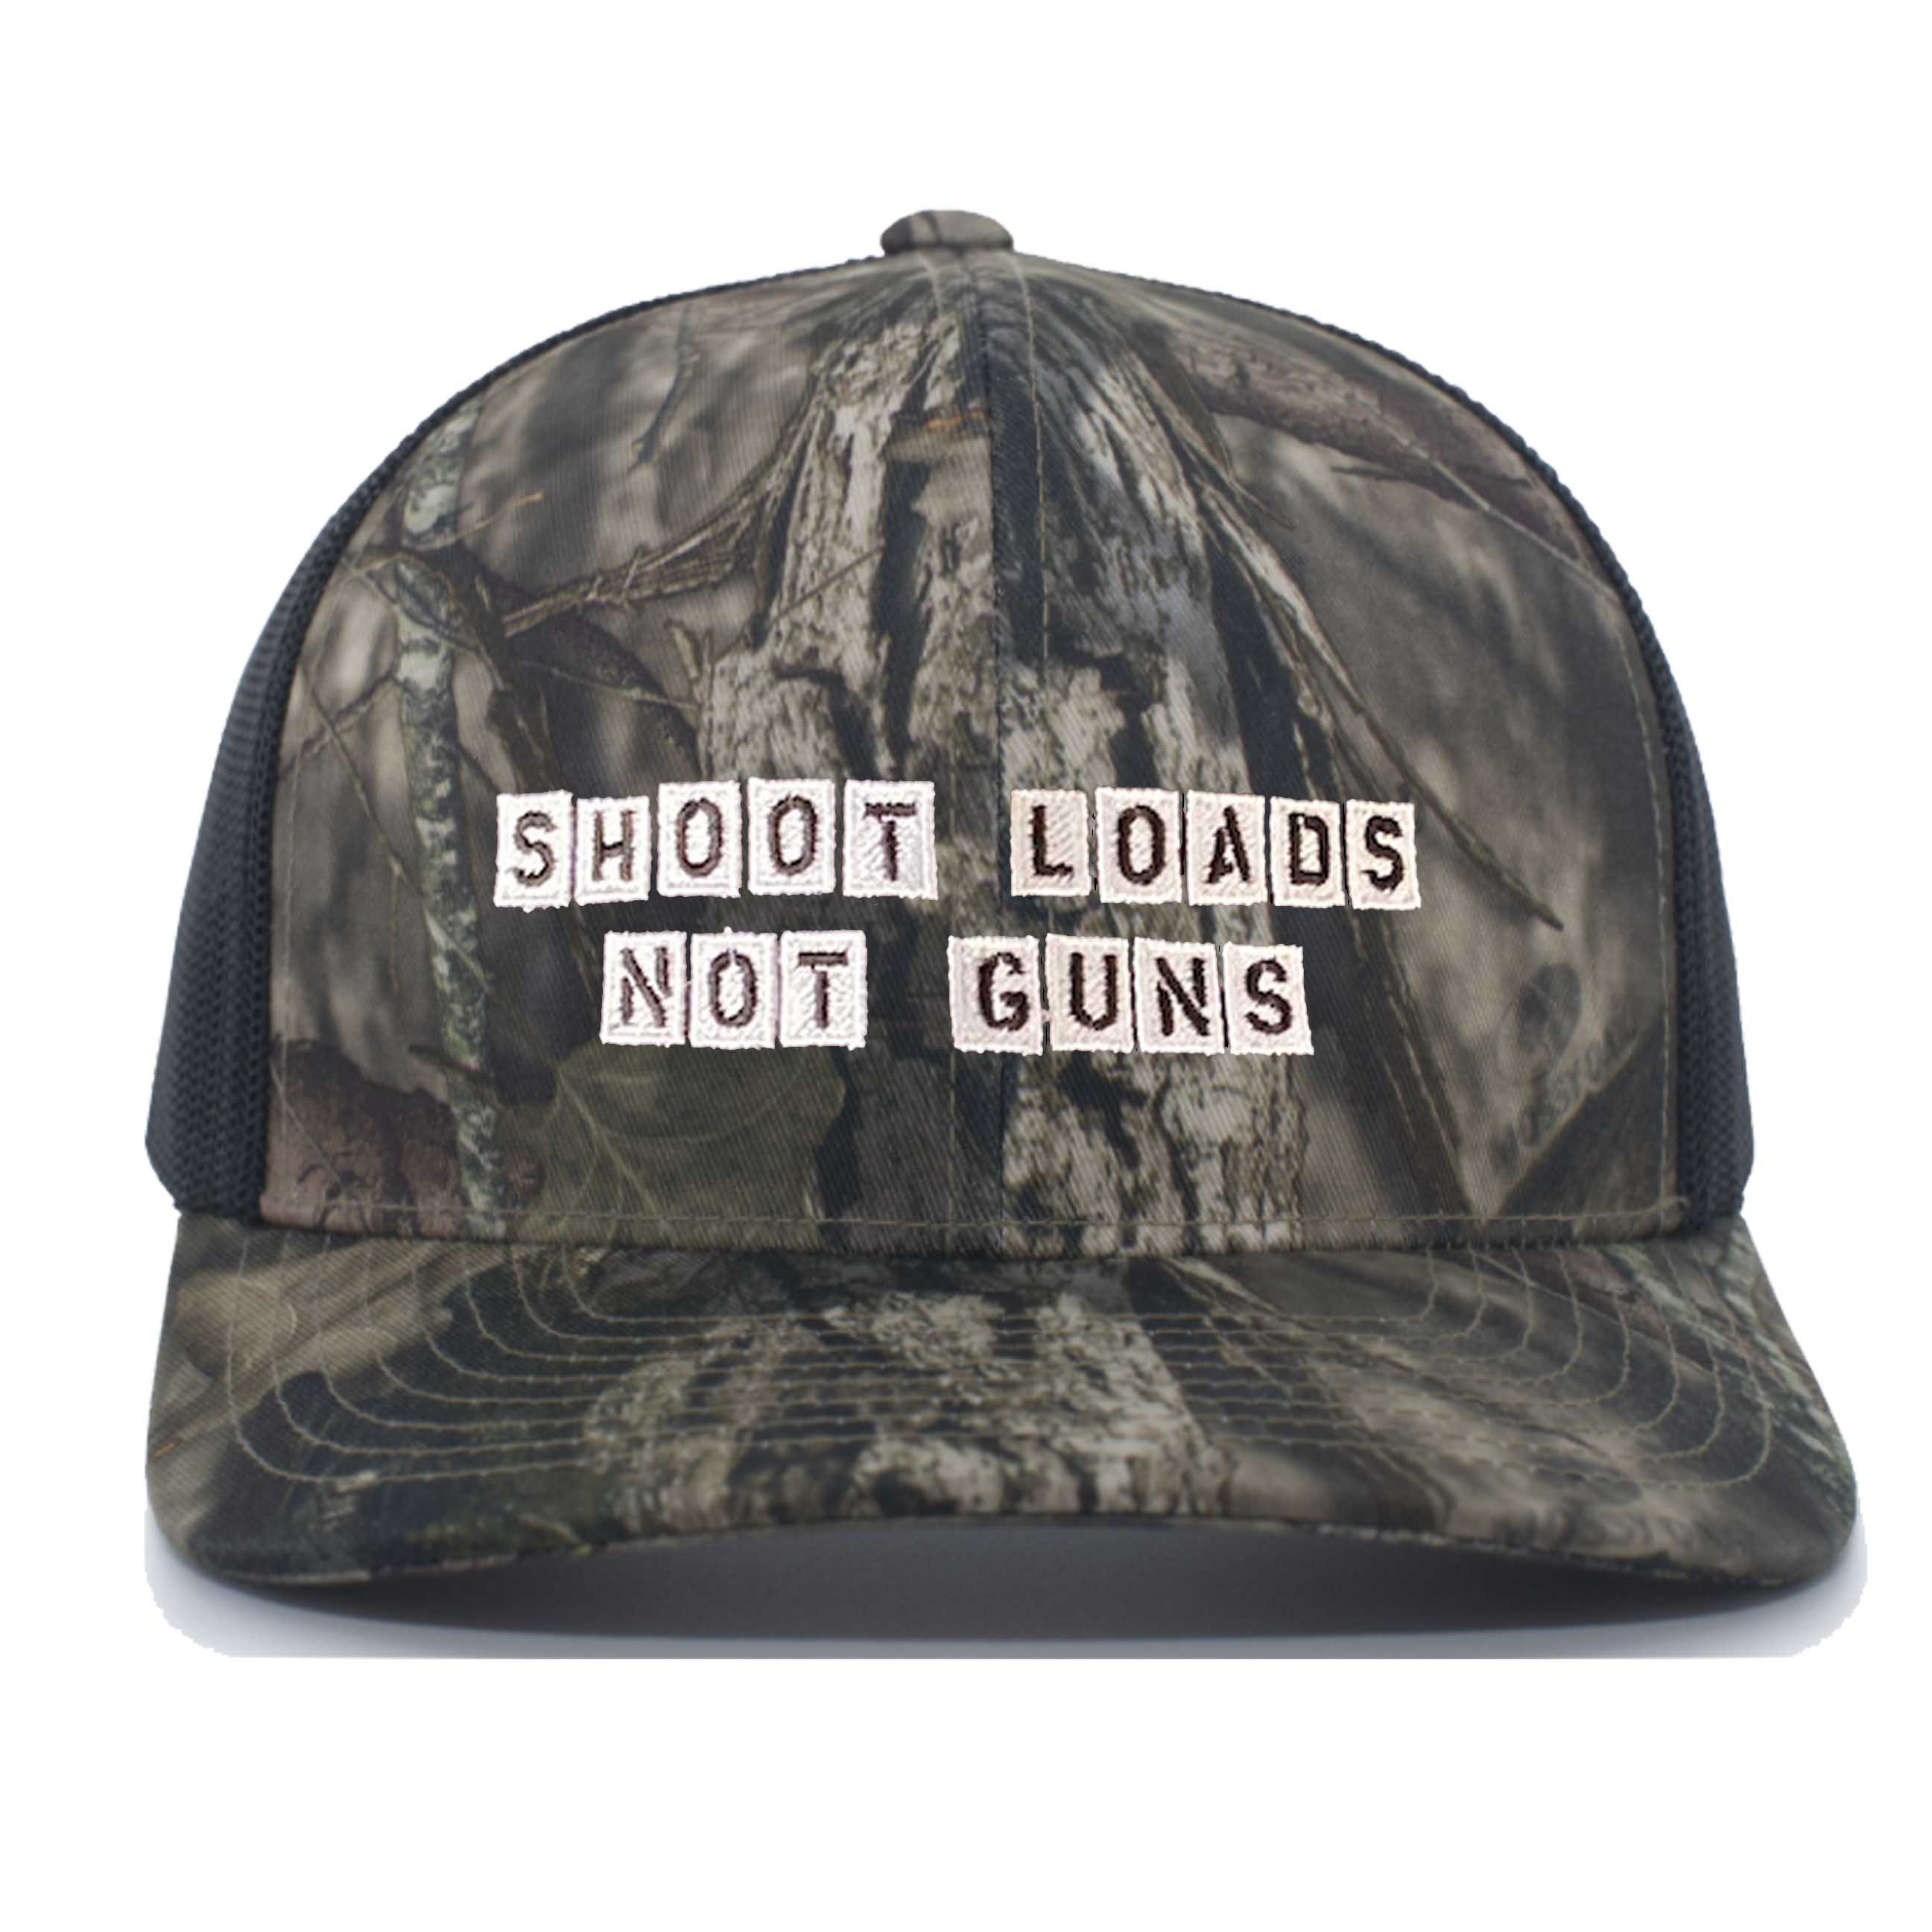 Shoot Loads Not Guns Break Up Country mossy oak black Trucker Mesh Snapback Hat